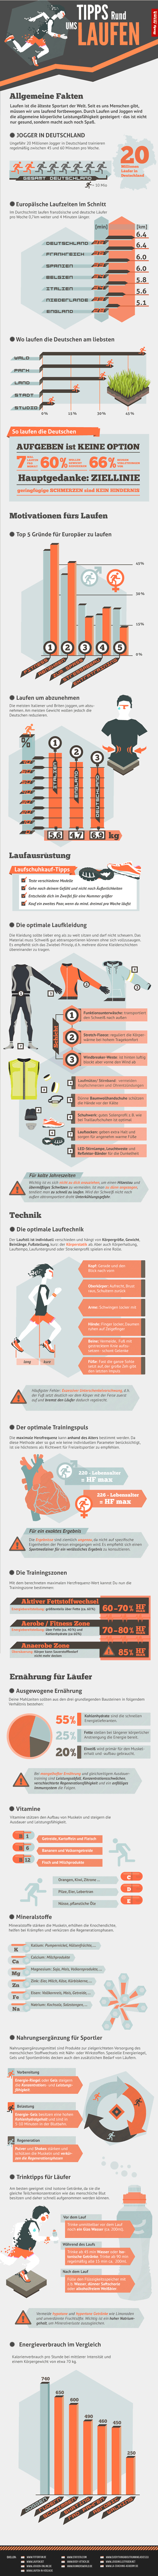 Infografik zum Laufen in Deutschland